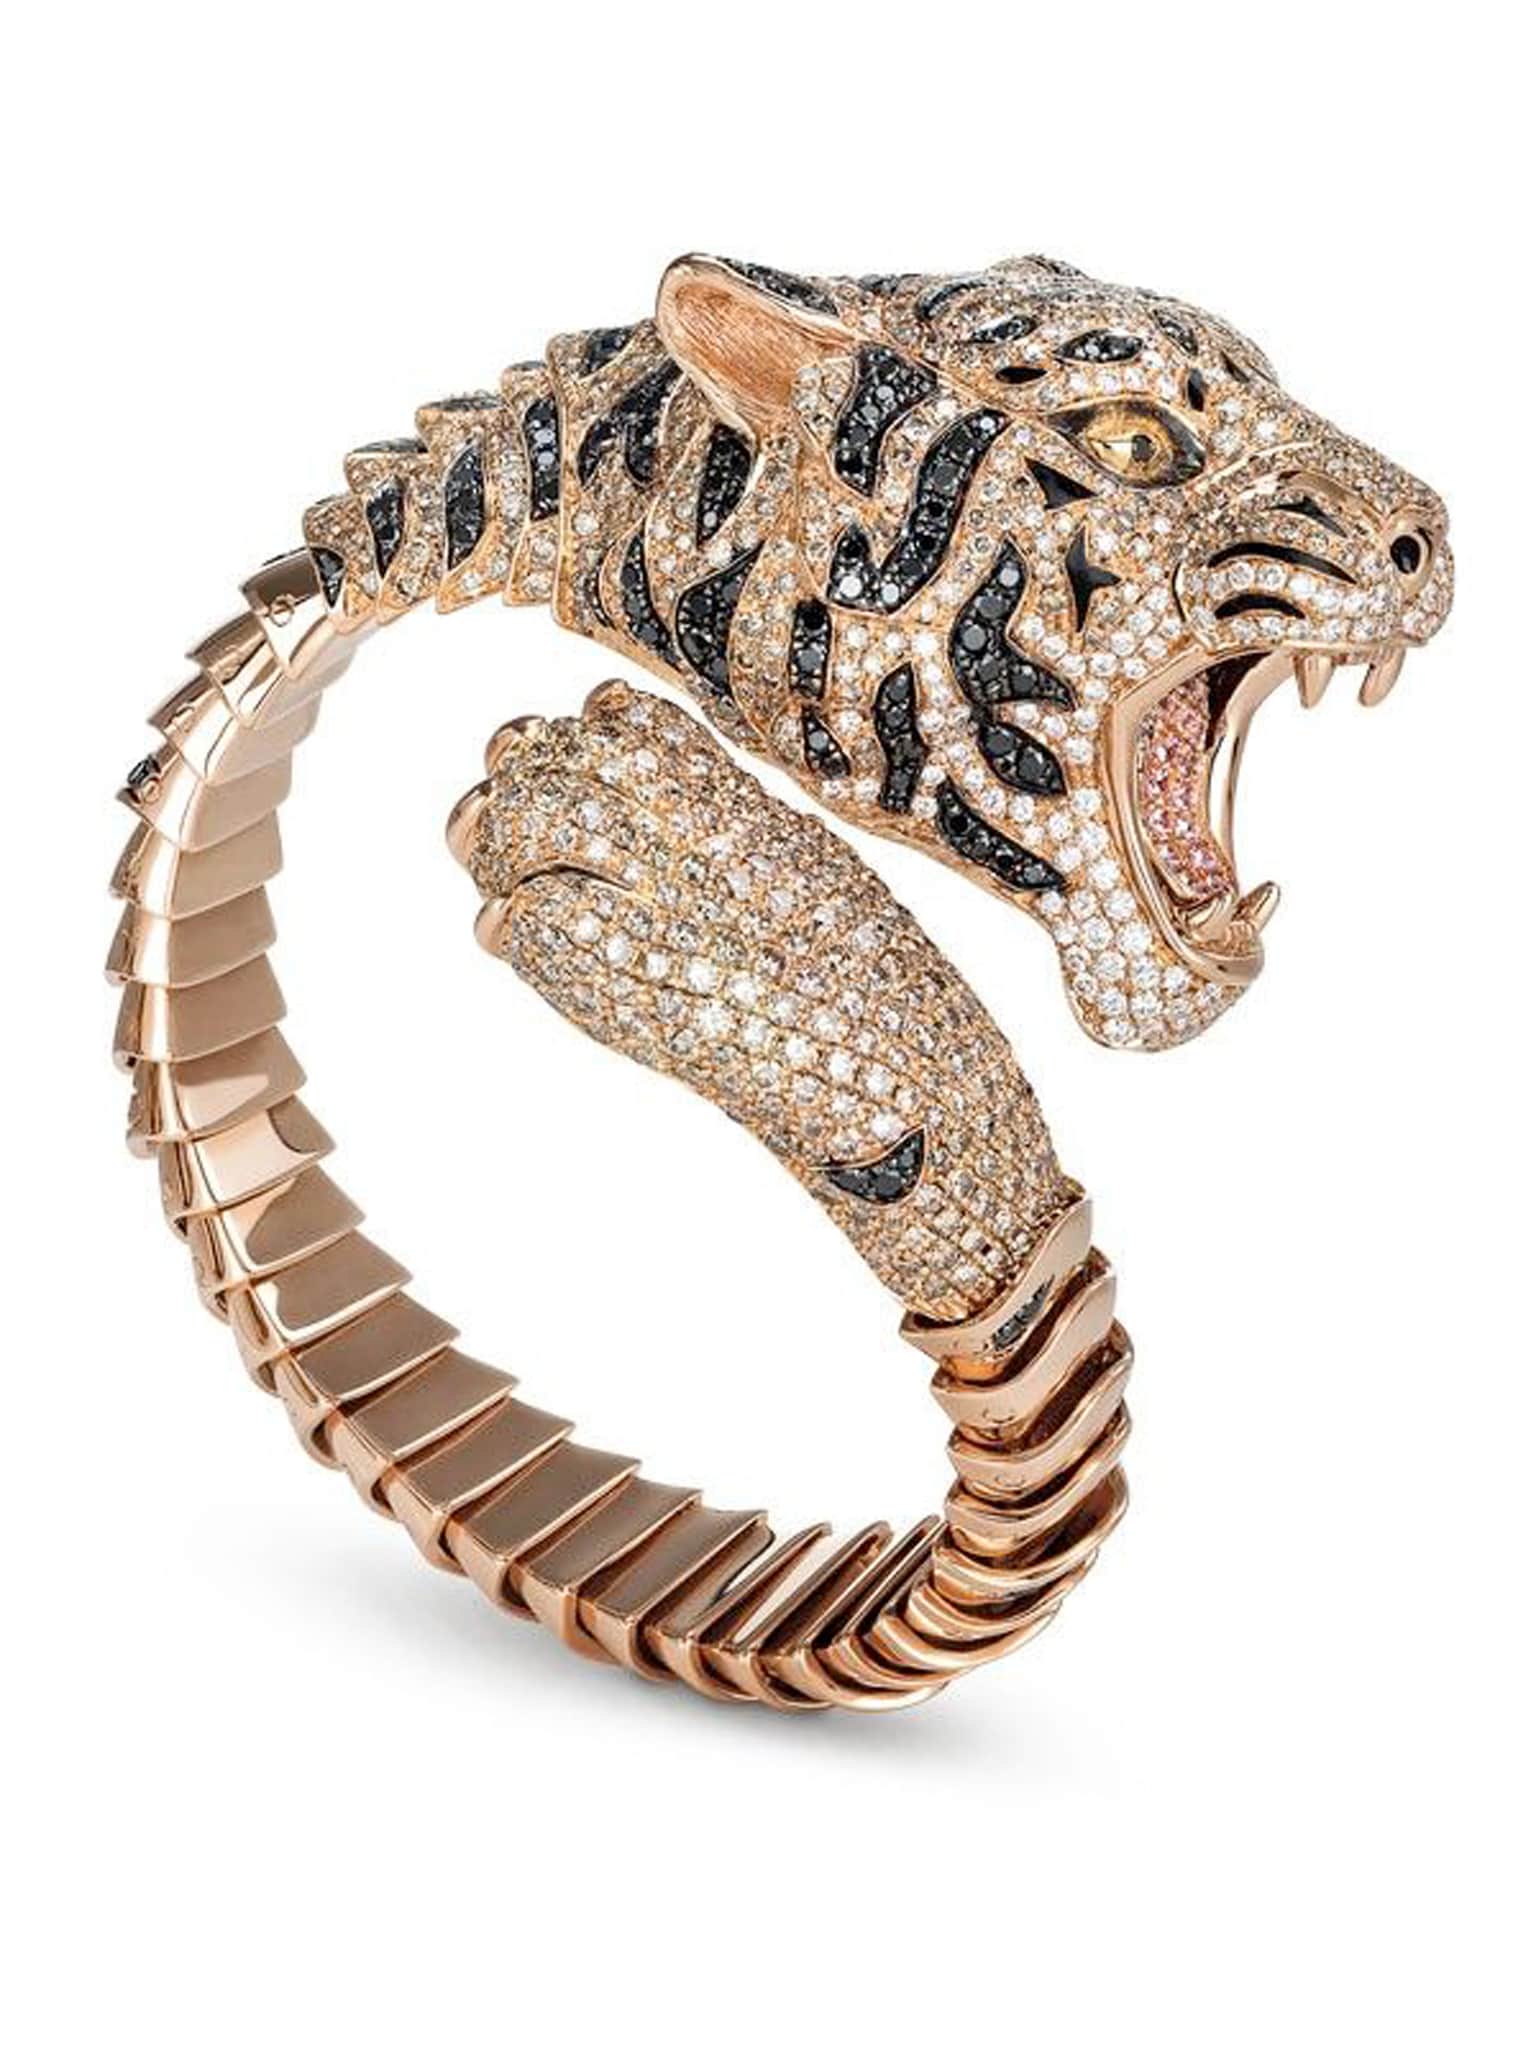 Roberto Coin. Bracciale Tigri Limited Edition, in oro rosa e brunito, con diamanti bianchi, neri e brown, e zaffiri